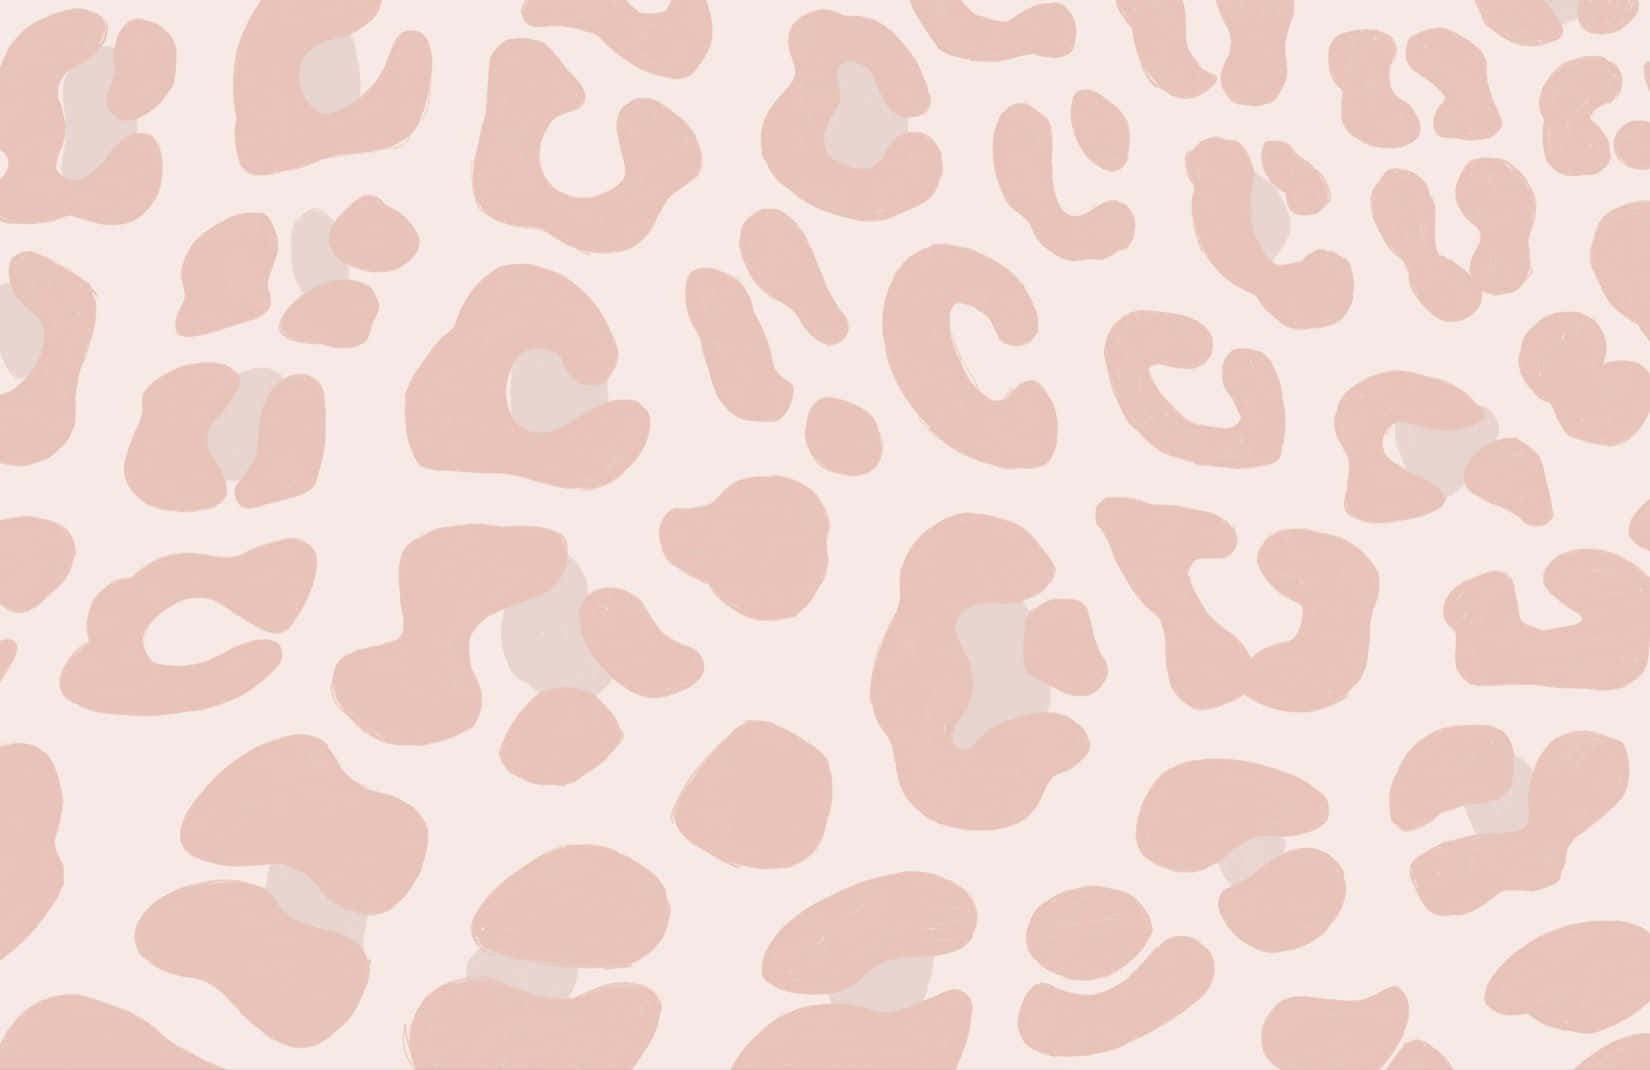 Bringensie Mit Dieser Pinkfarbenen Leopardenmuster-tapete Einen Hauch Von Stil In Jeden Raum. Wallpaper